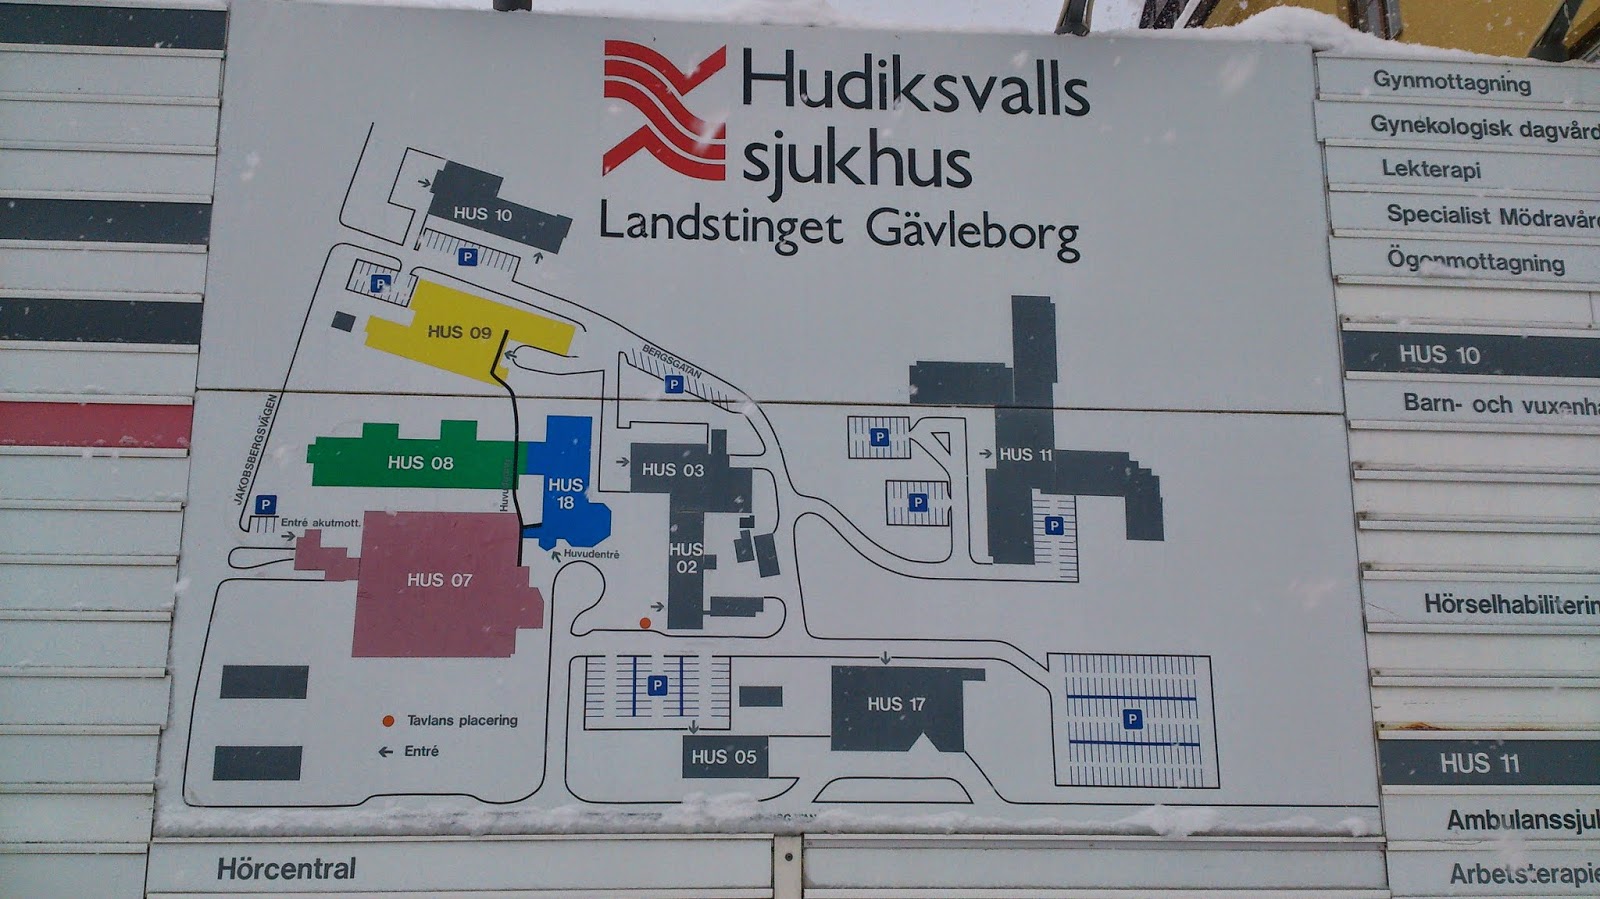 Hudiksvalls Sjukhus Karta | Karta 2020